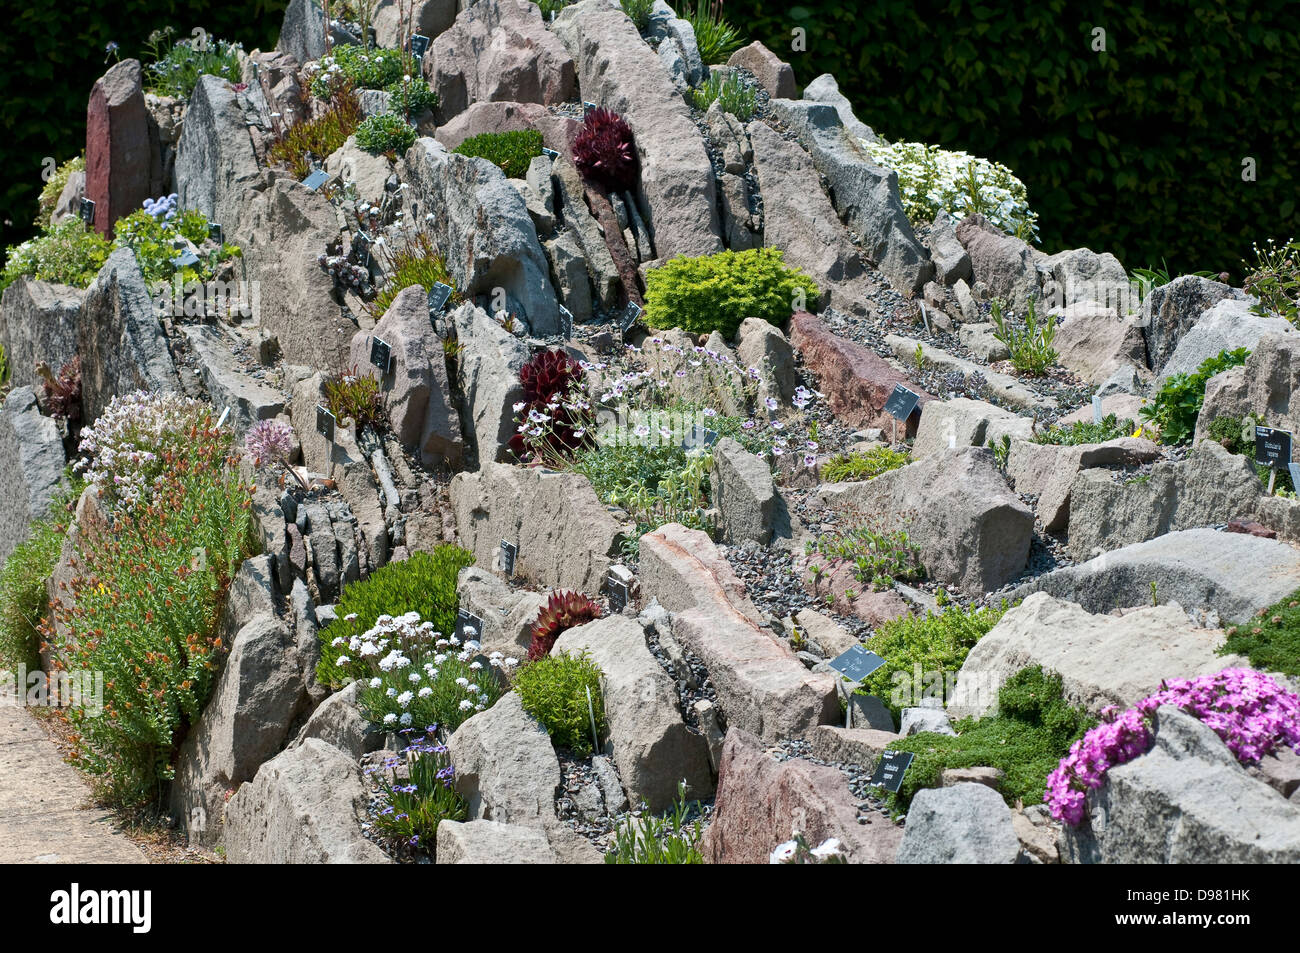 Alpine mountain flora for Every Garden, Rock garden Stock Photo